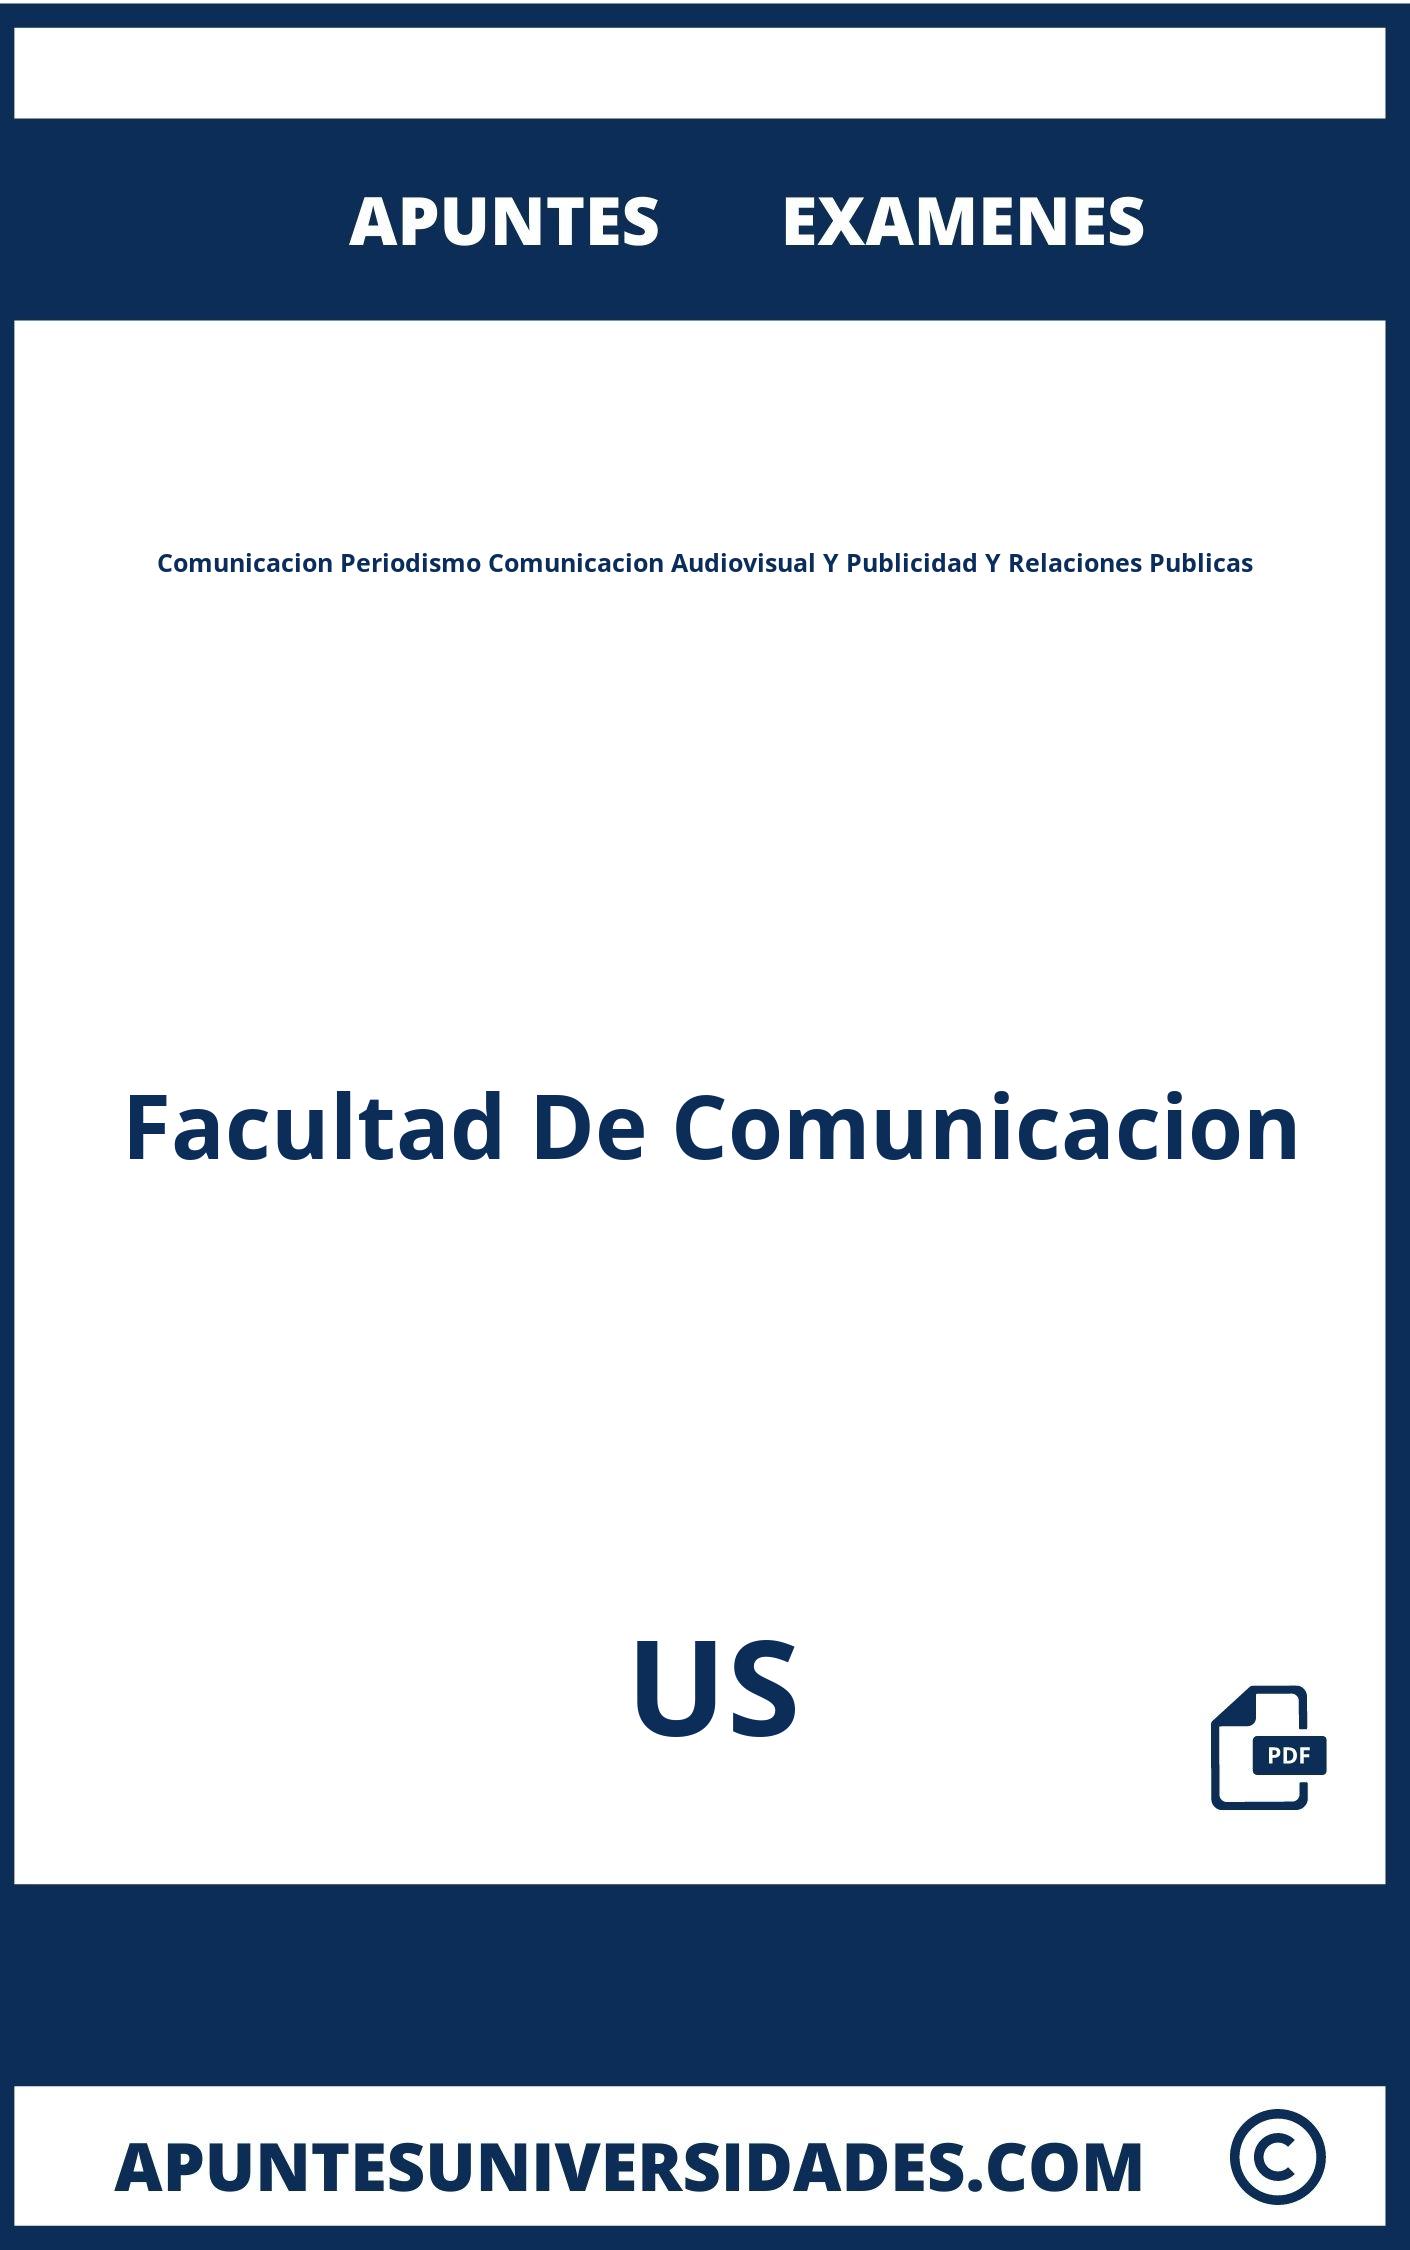 Examenes y Apuntes Comunicacion Periodismo Comunicacion Audiovisual Y Publicidad Y Relaciones Publicas US